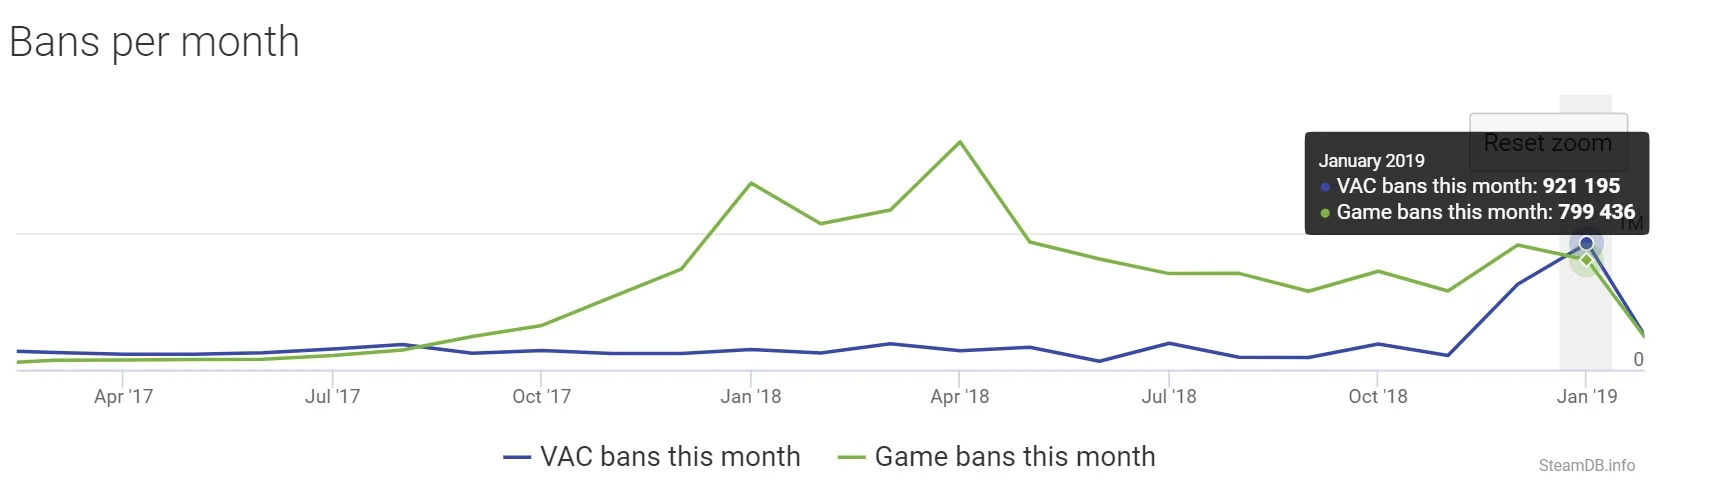 «Спасибо бесплатному CS:GO». В январе Valve Anti-Cheat забанила 900 тыс. аккаунтов. Это рекорд - фото 2